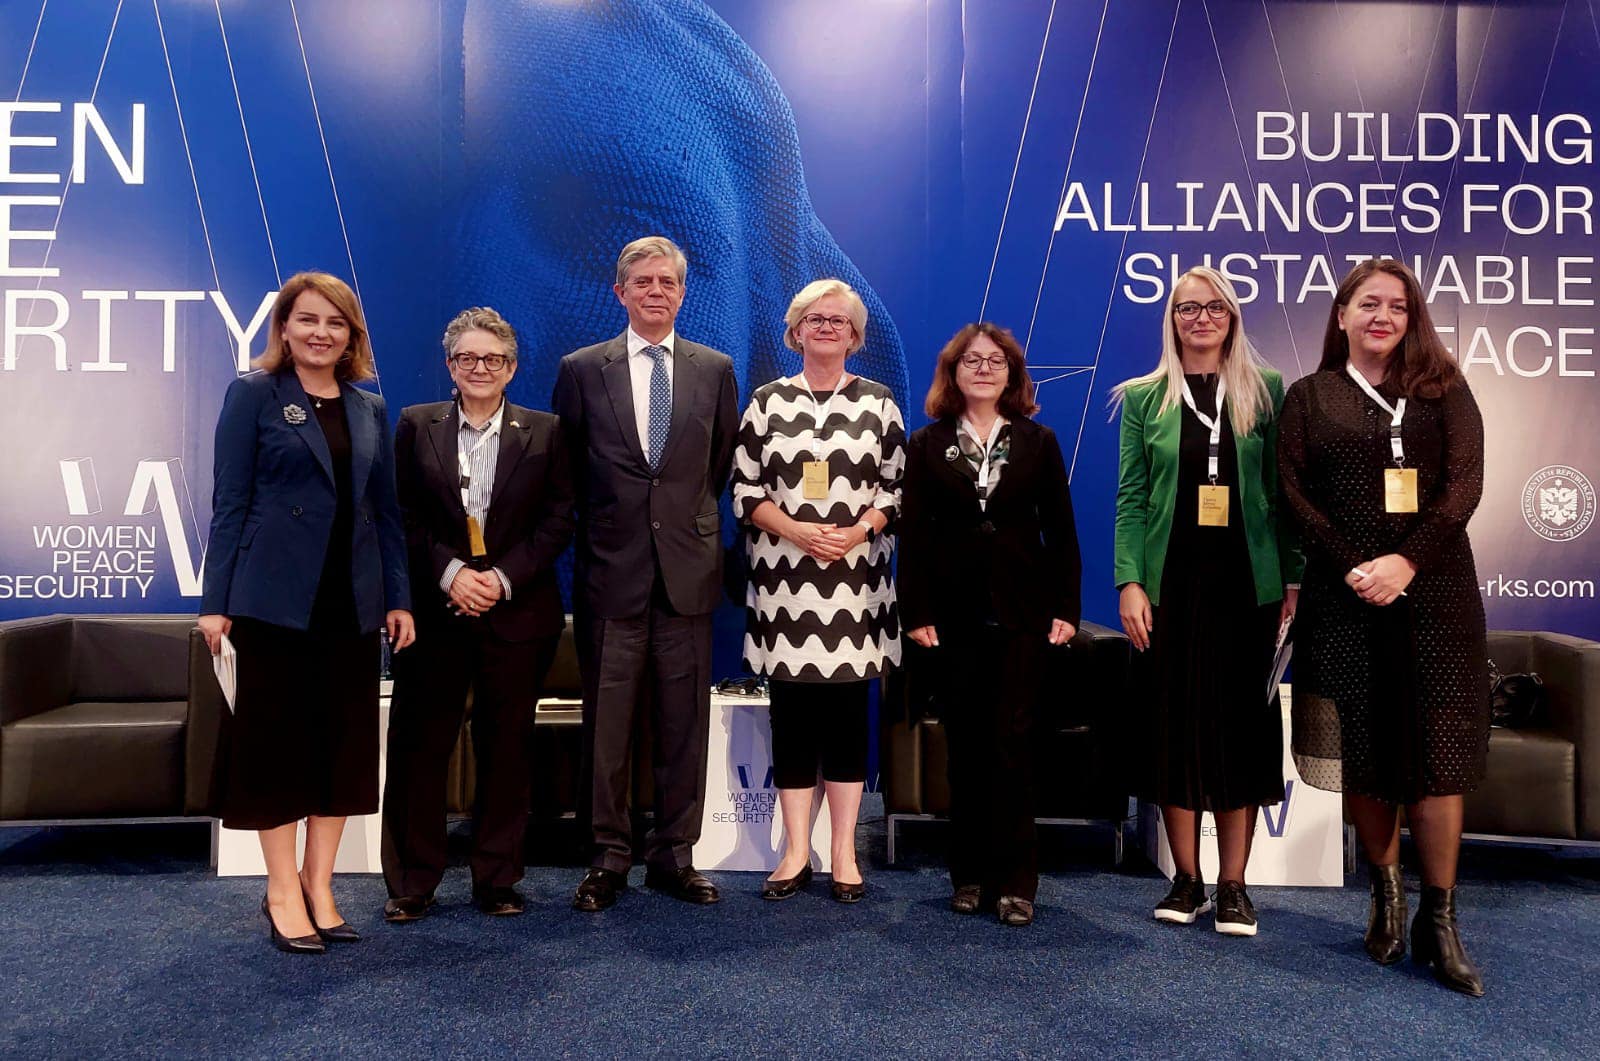 EULEX-i mbështet Forumin për Gratë, Paqen dhe Sigurinë 2022